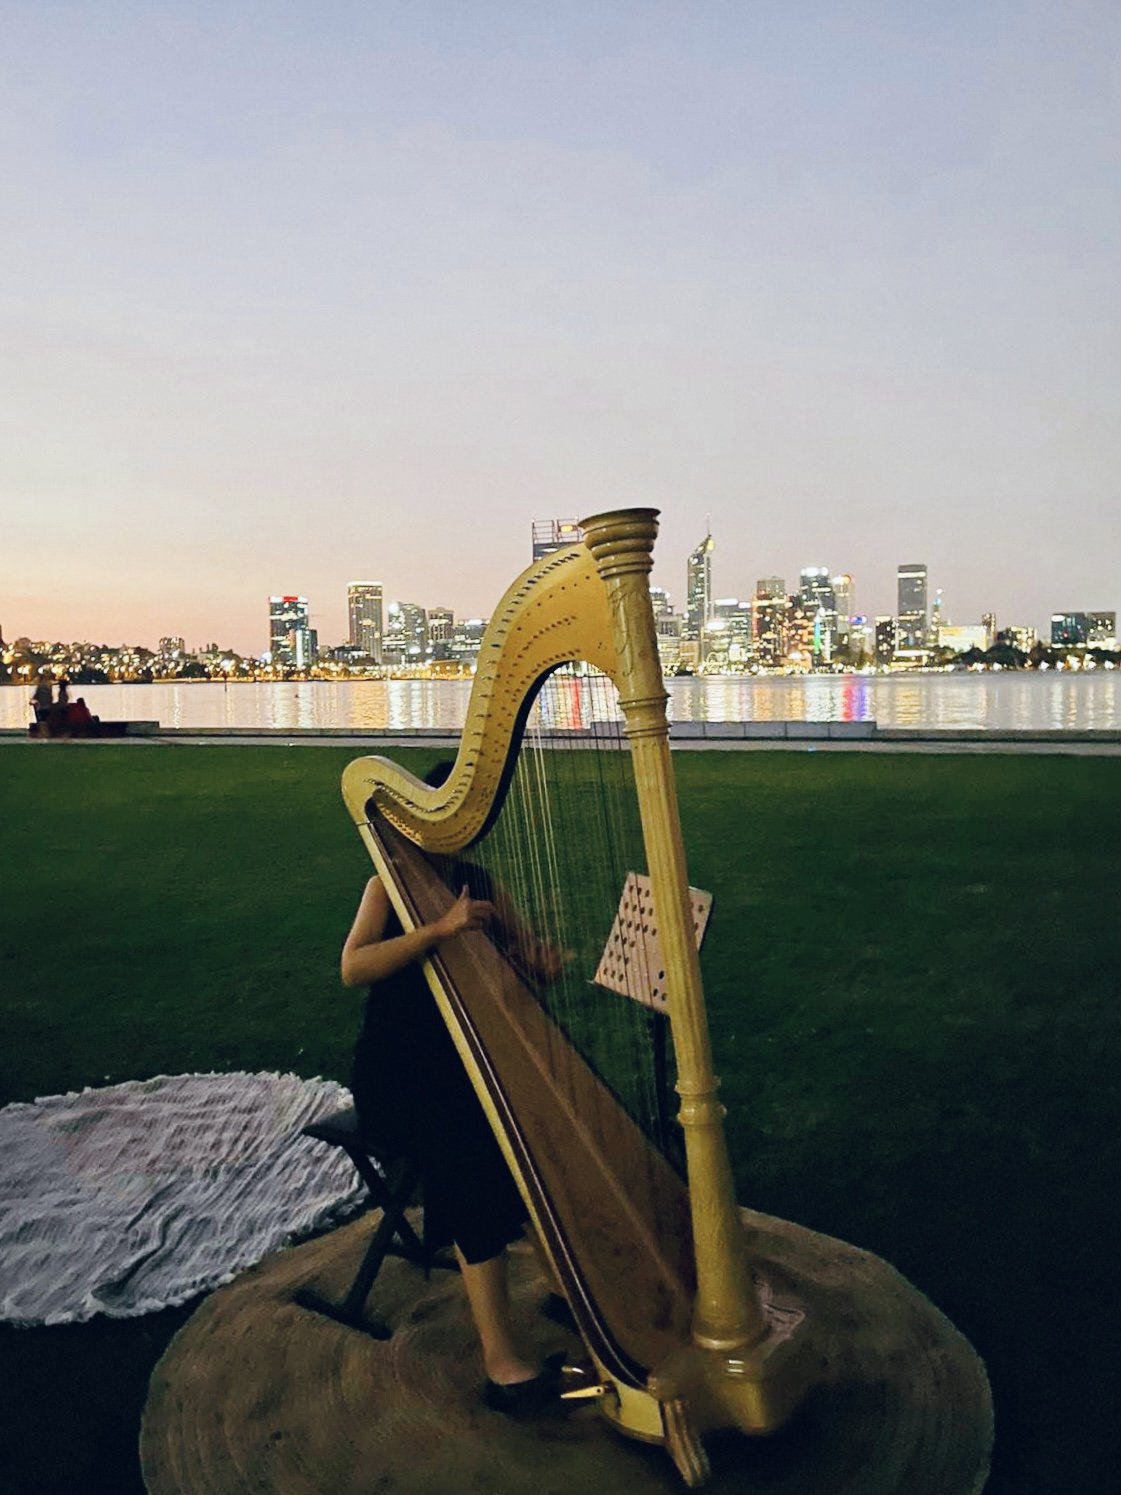 Harp playing at South Perth Foreshore